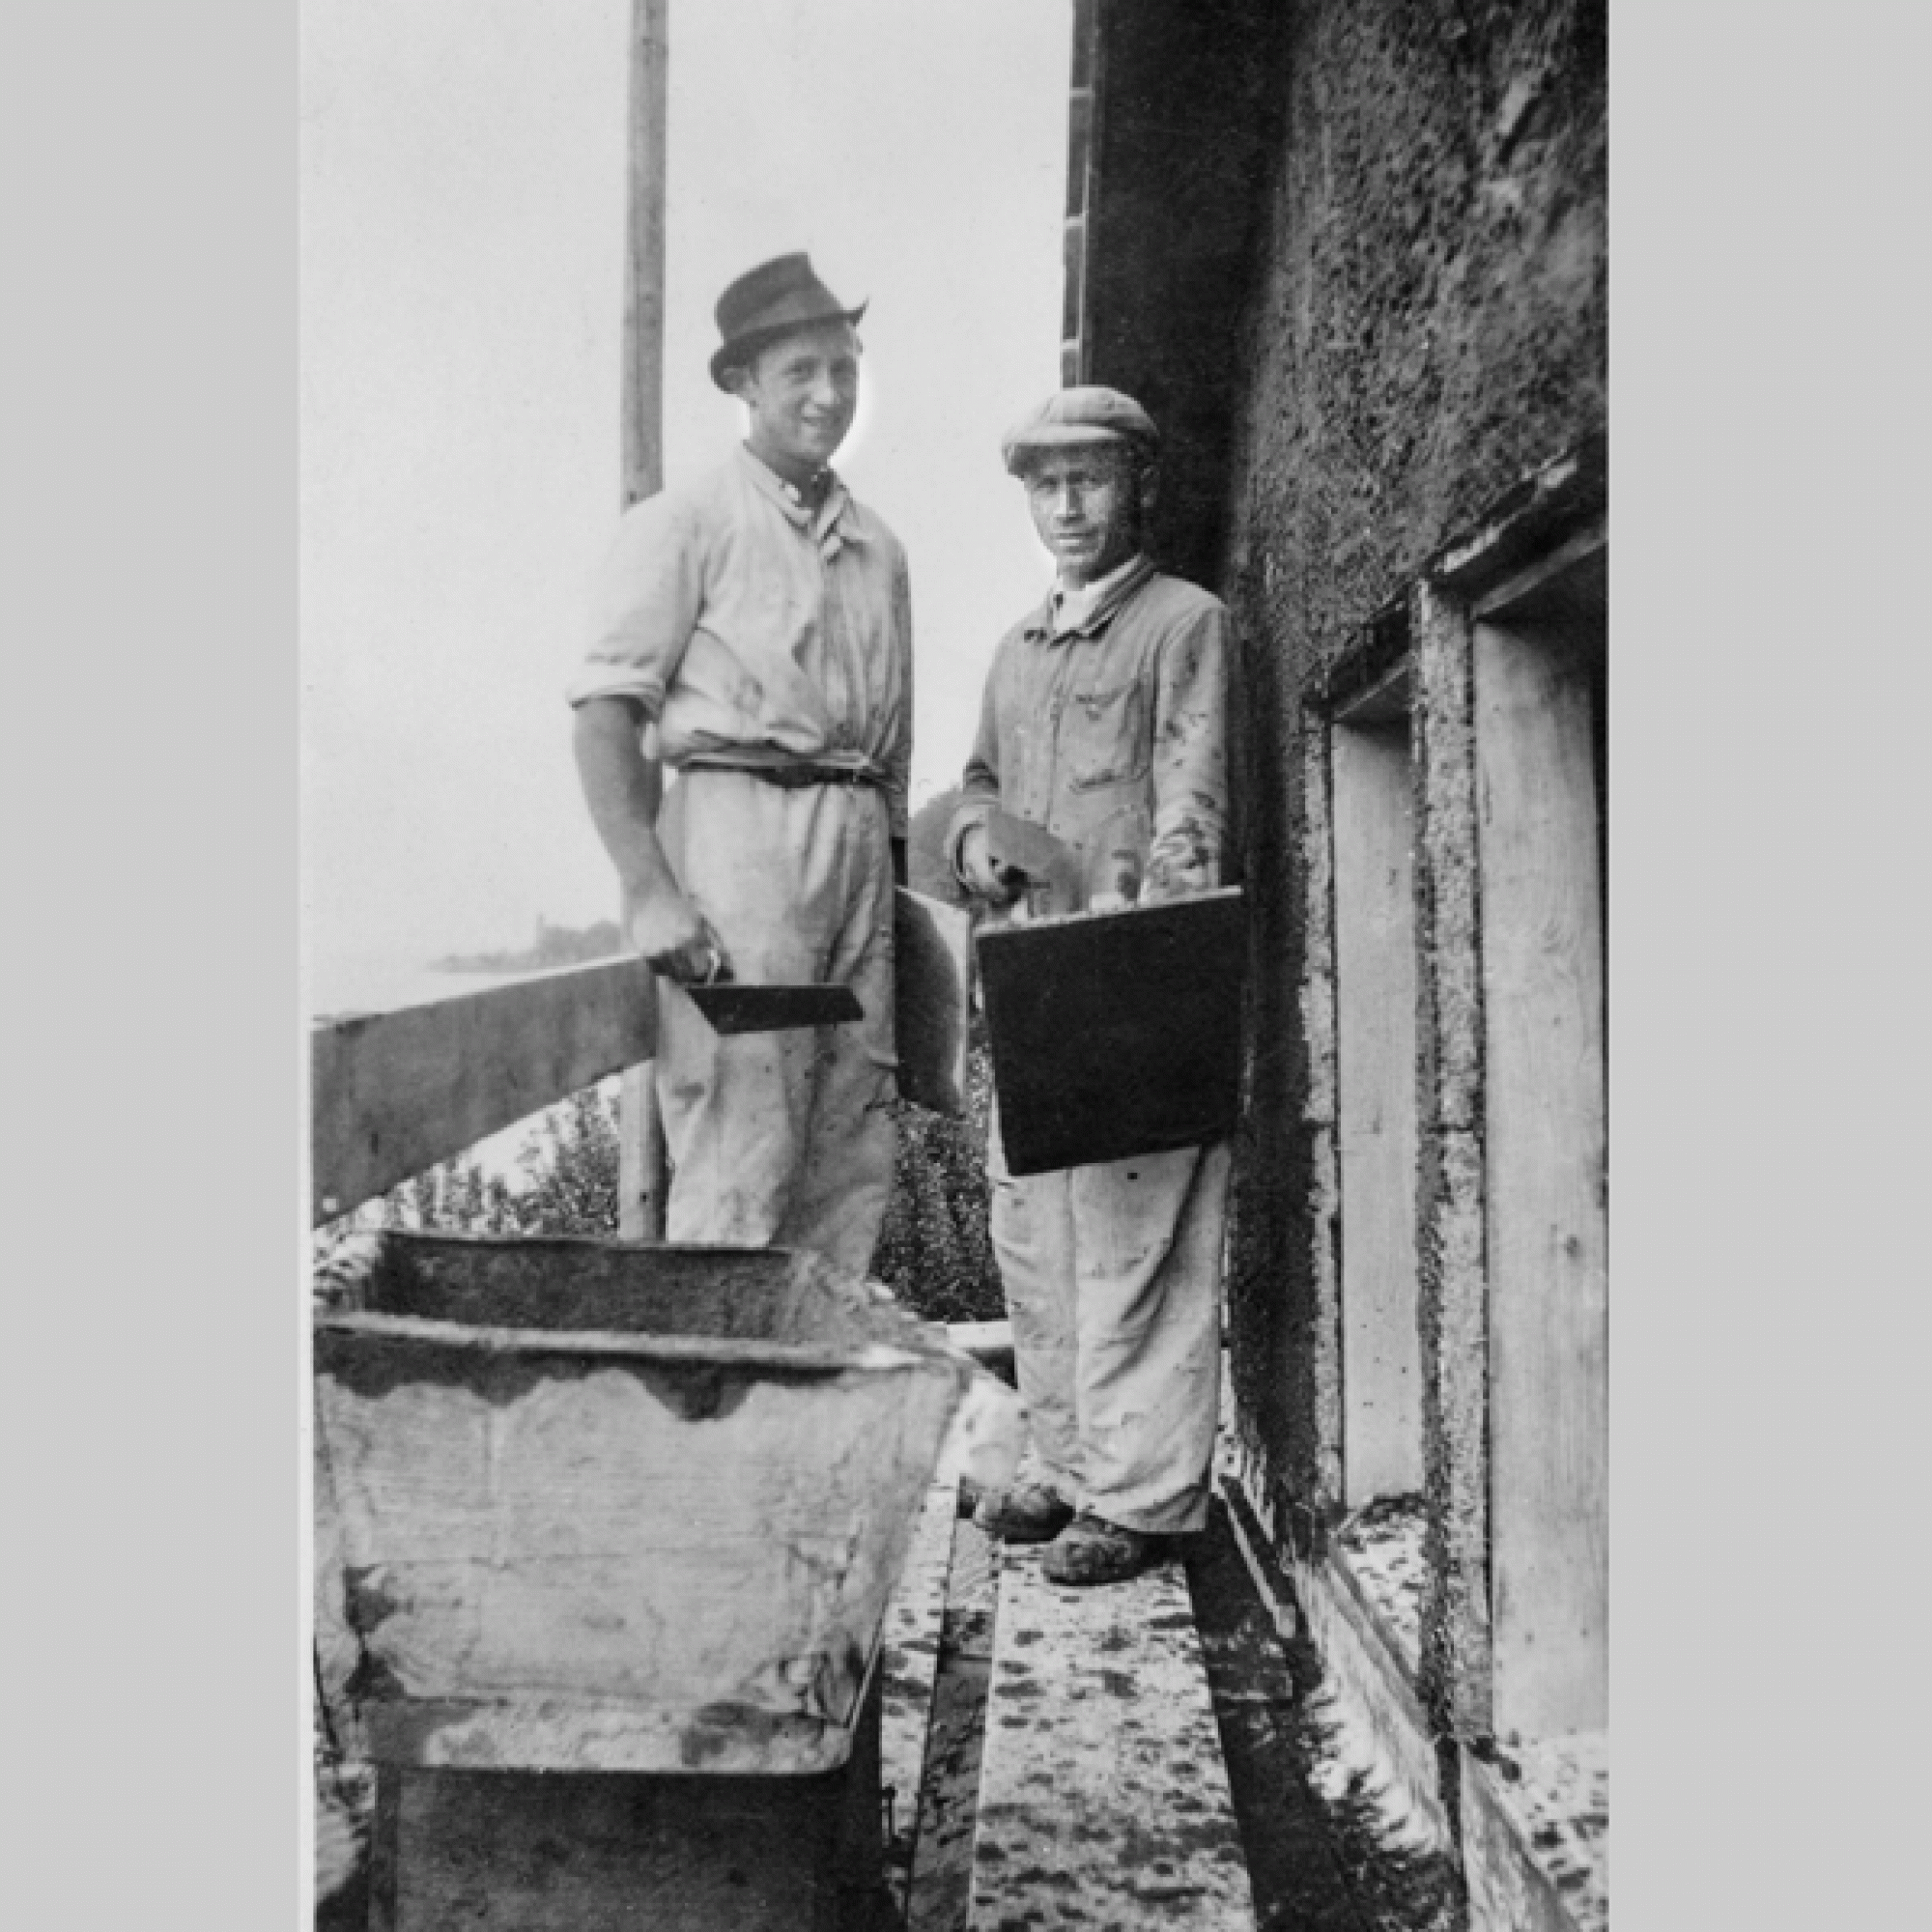 Alfredo Battistini mit einem Kollegen auf dem Gerüst beim Auftragen des Verputzes, 19152. (zvg)